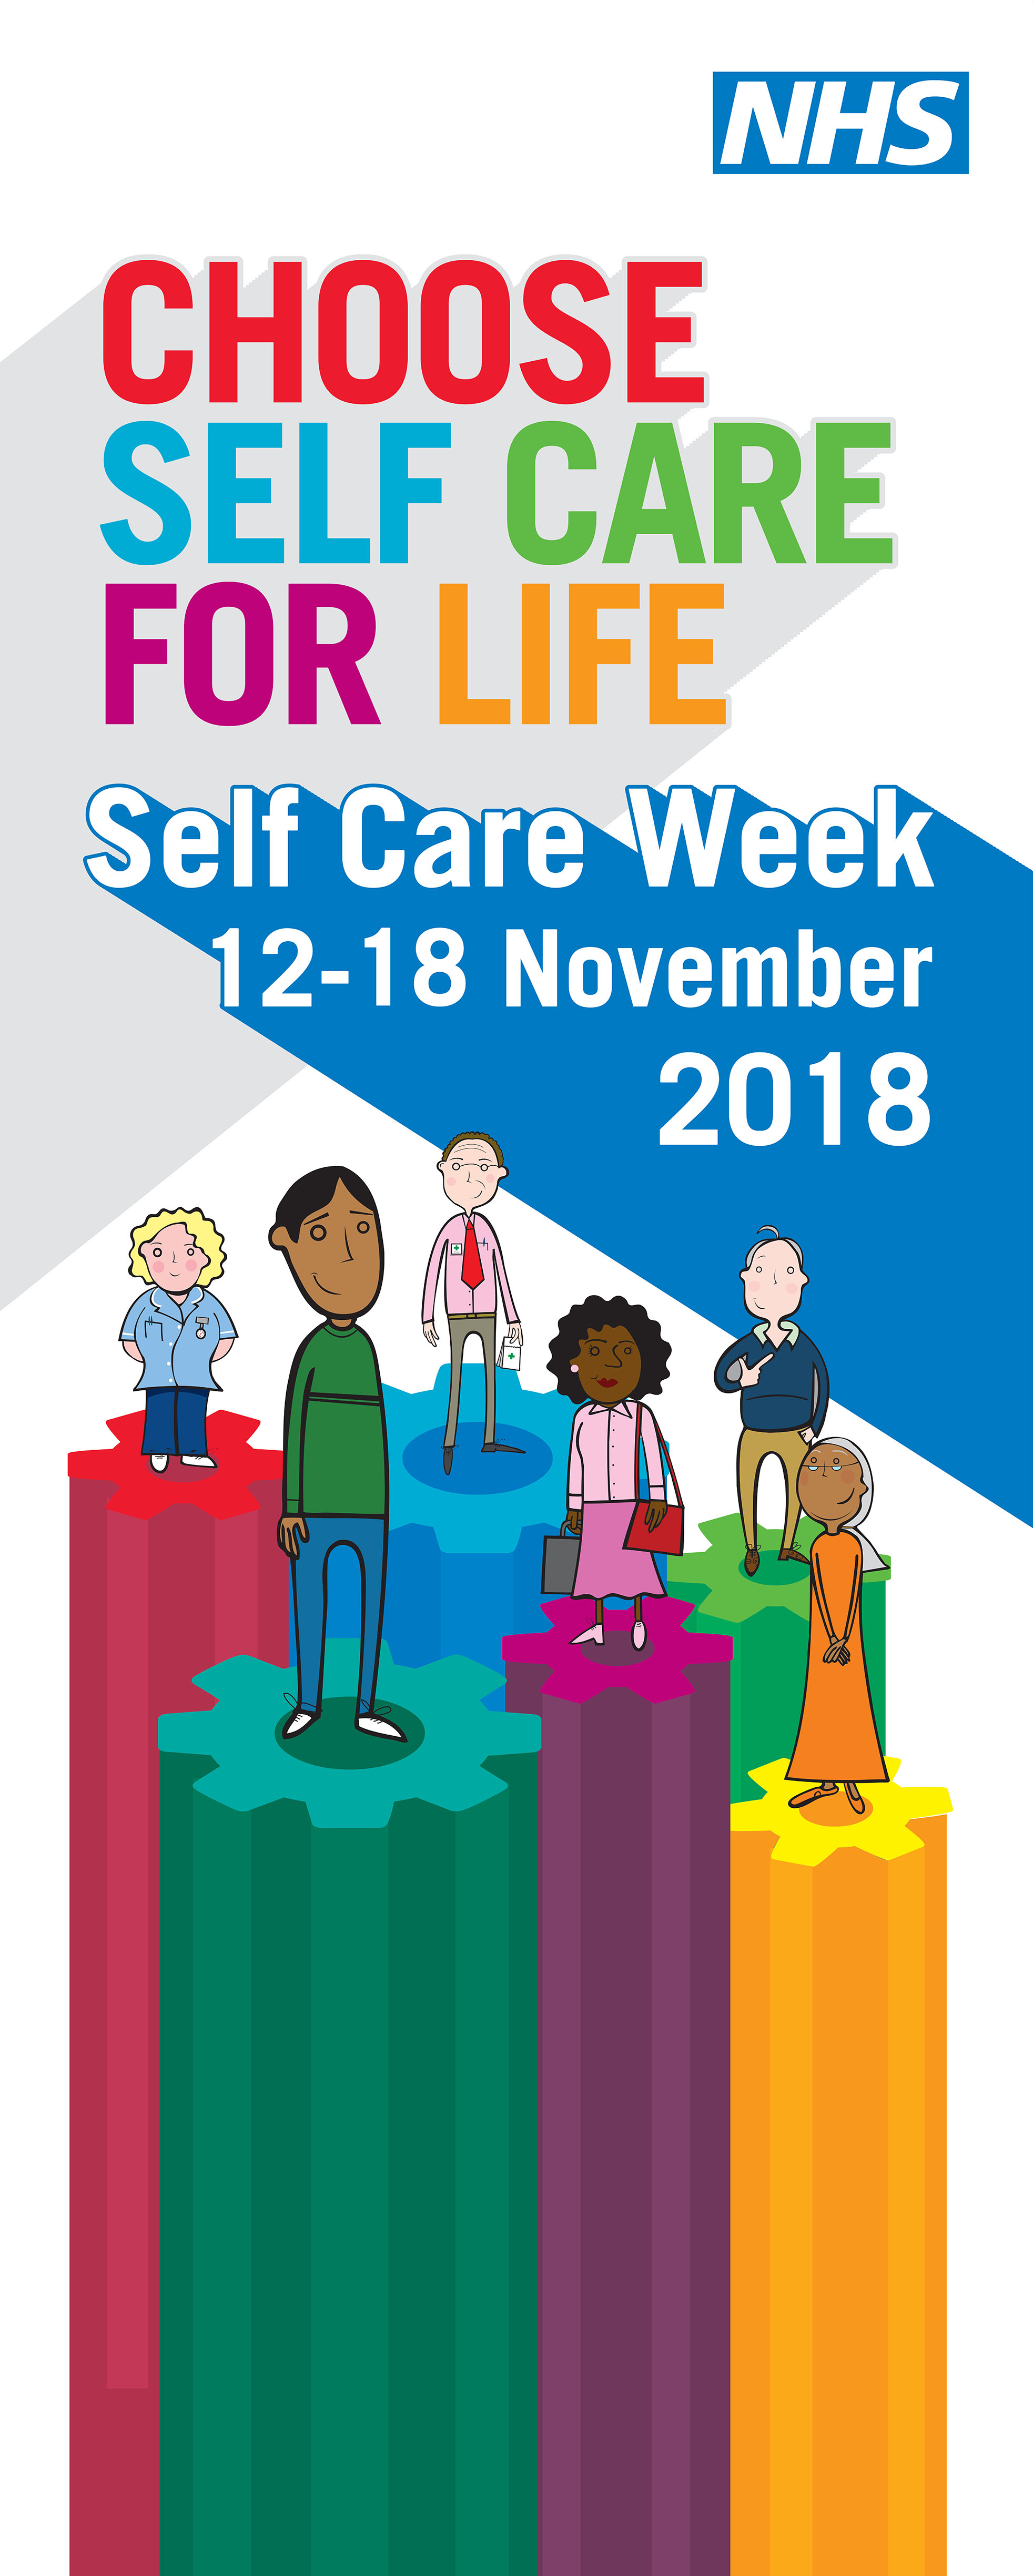 NHS Self Care Week OM Media Group